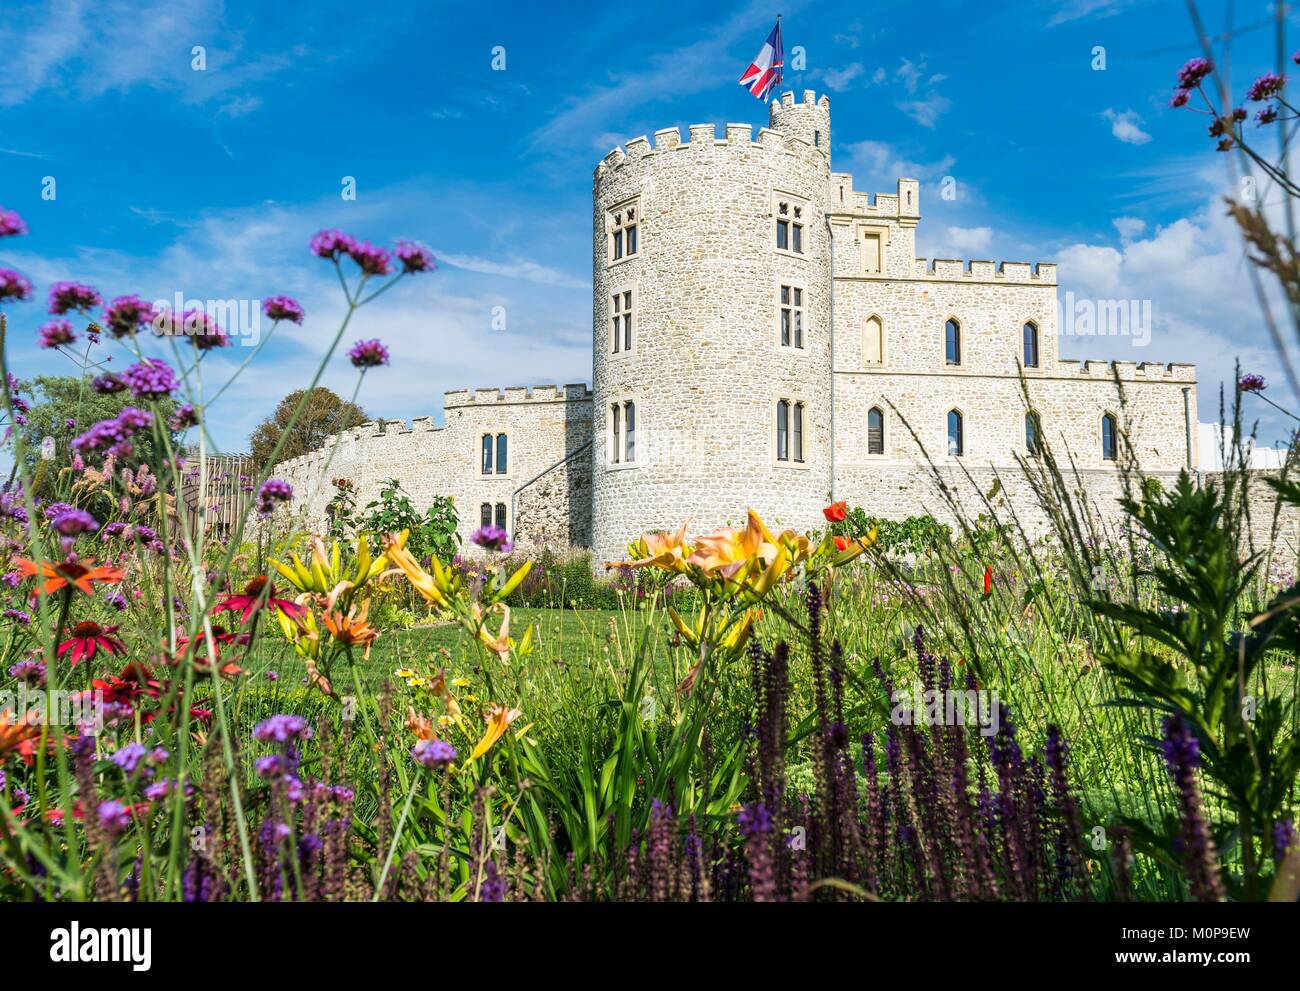 France, Pas-de-Calais, Calais, Hardelot castle, château du 13ème siècle réaménagé en un hôtel particulier dans le 19e siècle Banque D'Images